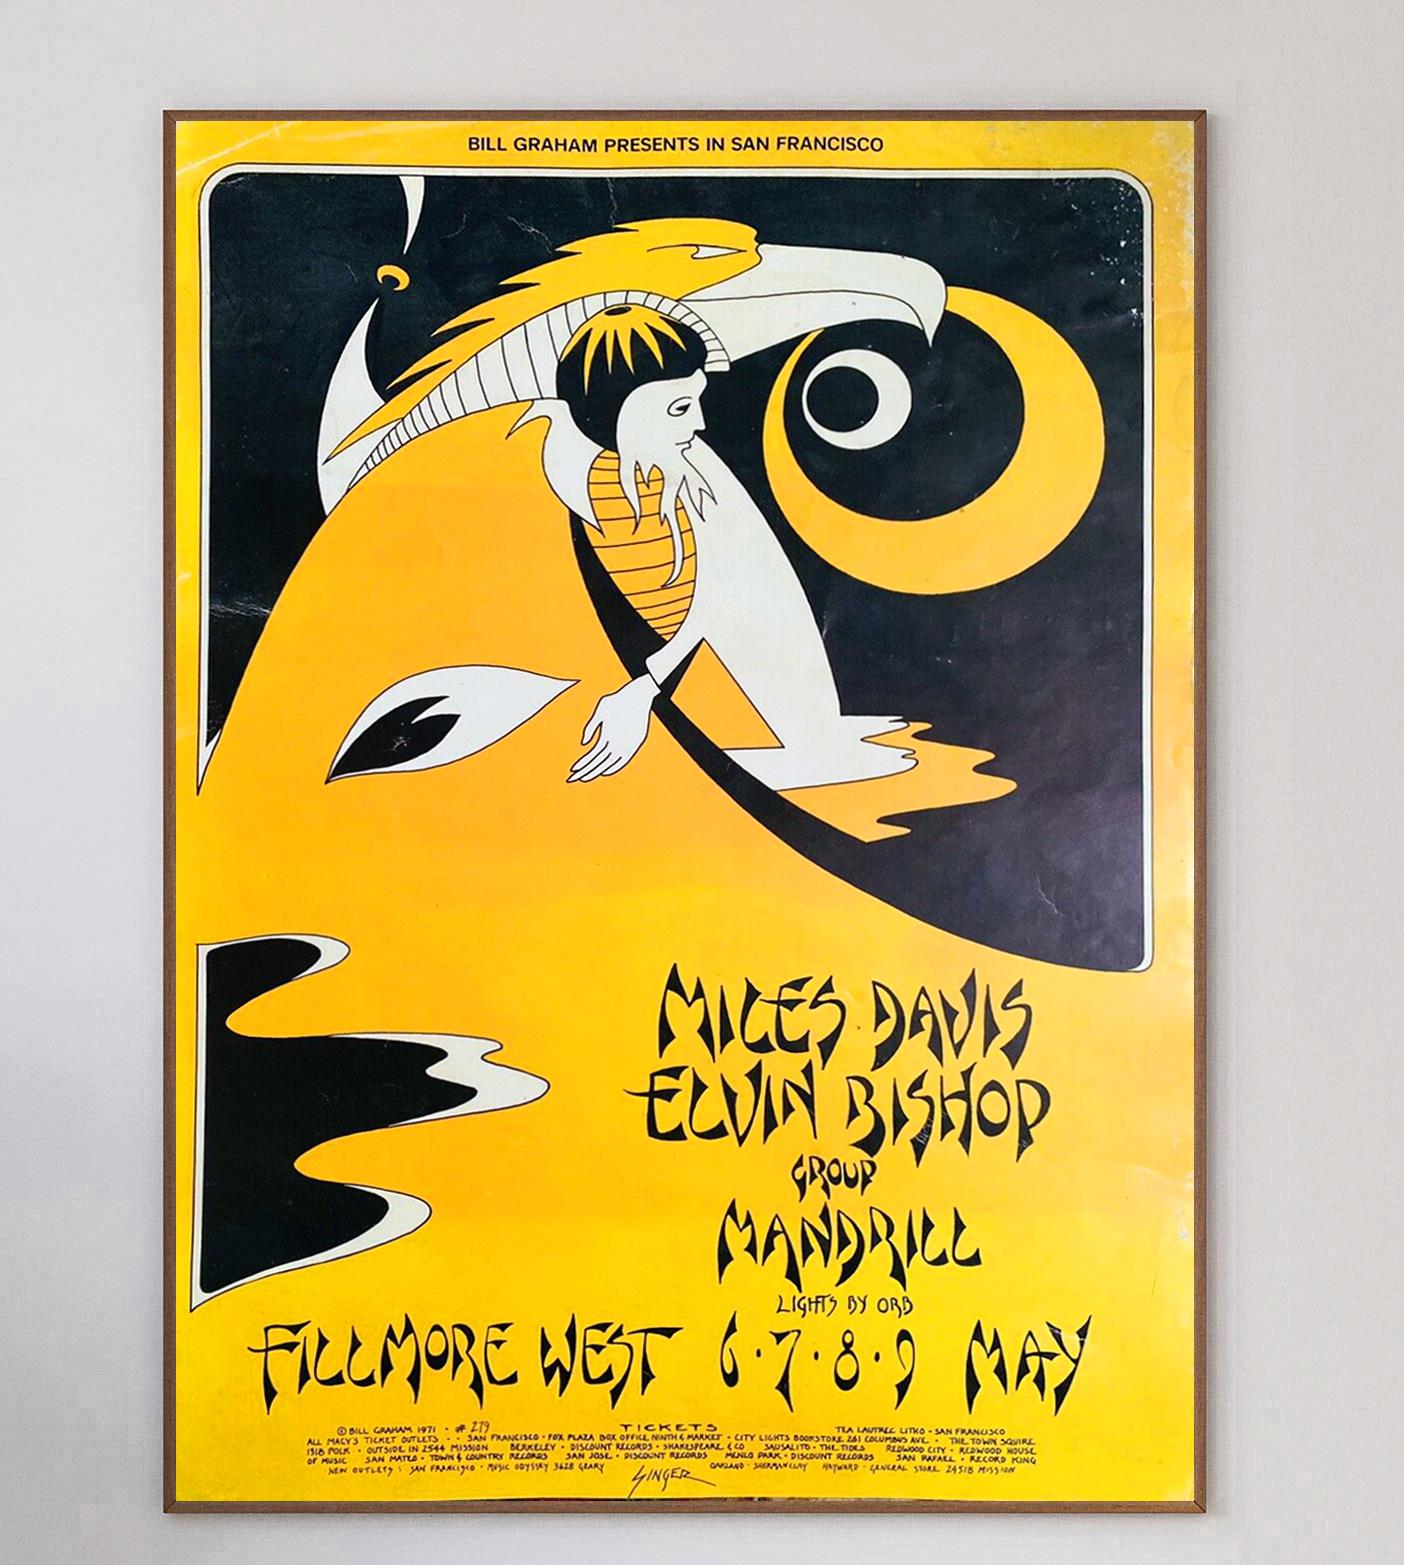 Conçue par l'artiste emblématique David Singer, cette magnifique affiche a été créée en 1971 pour promouvoir un concert de Miles Davis, Elvin Bishop & Mandrin au célèbre Fillmore West de San Francisco. Singer est surtout connu pour ses œuvres d'art